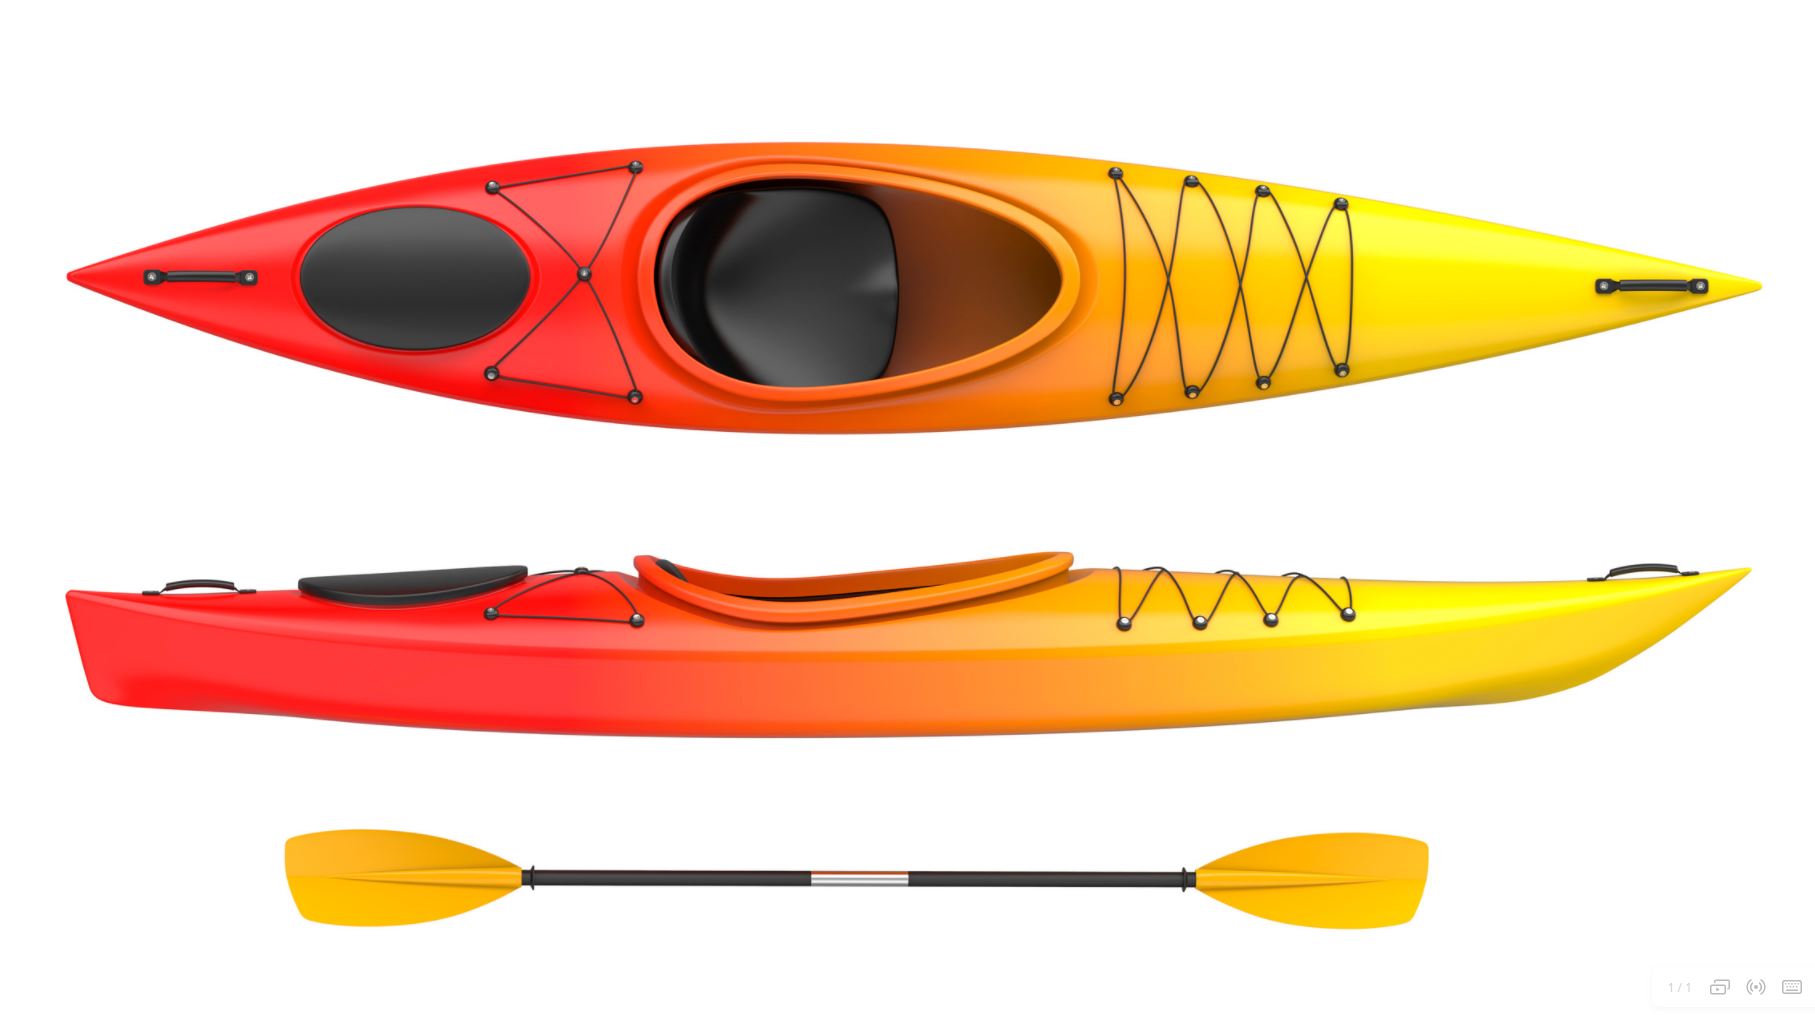 ANCHOR FOR CANOE = Plastic Anchor for Canoe